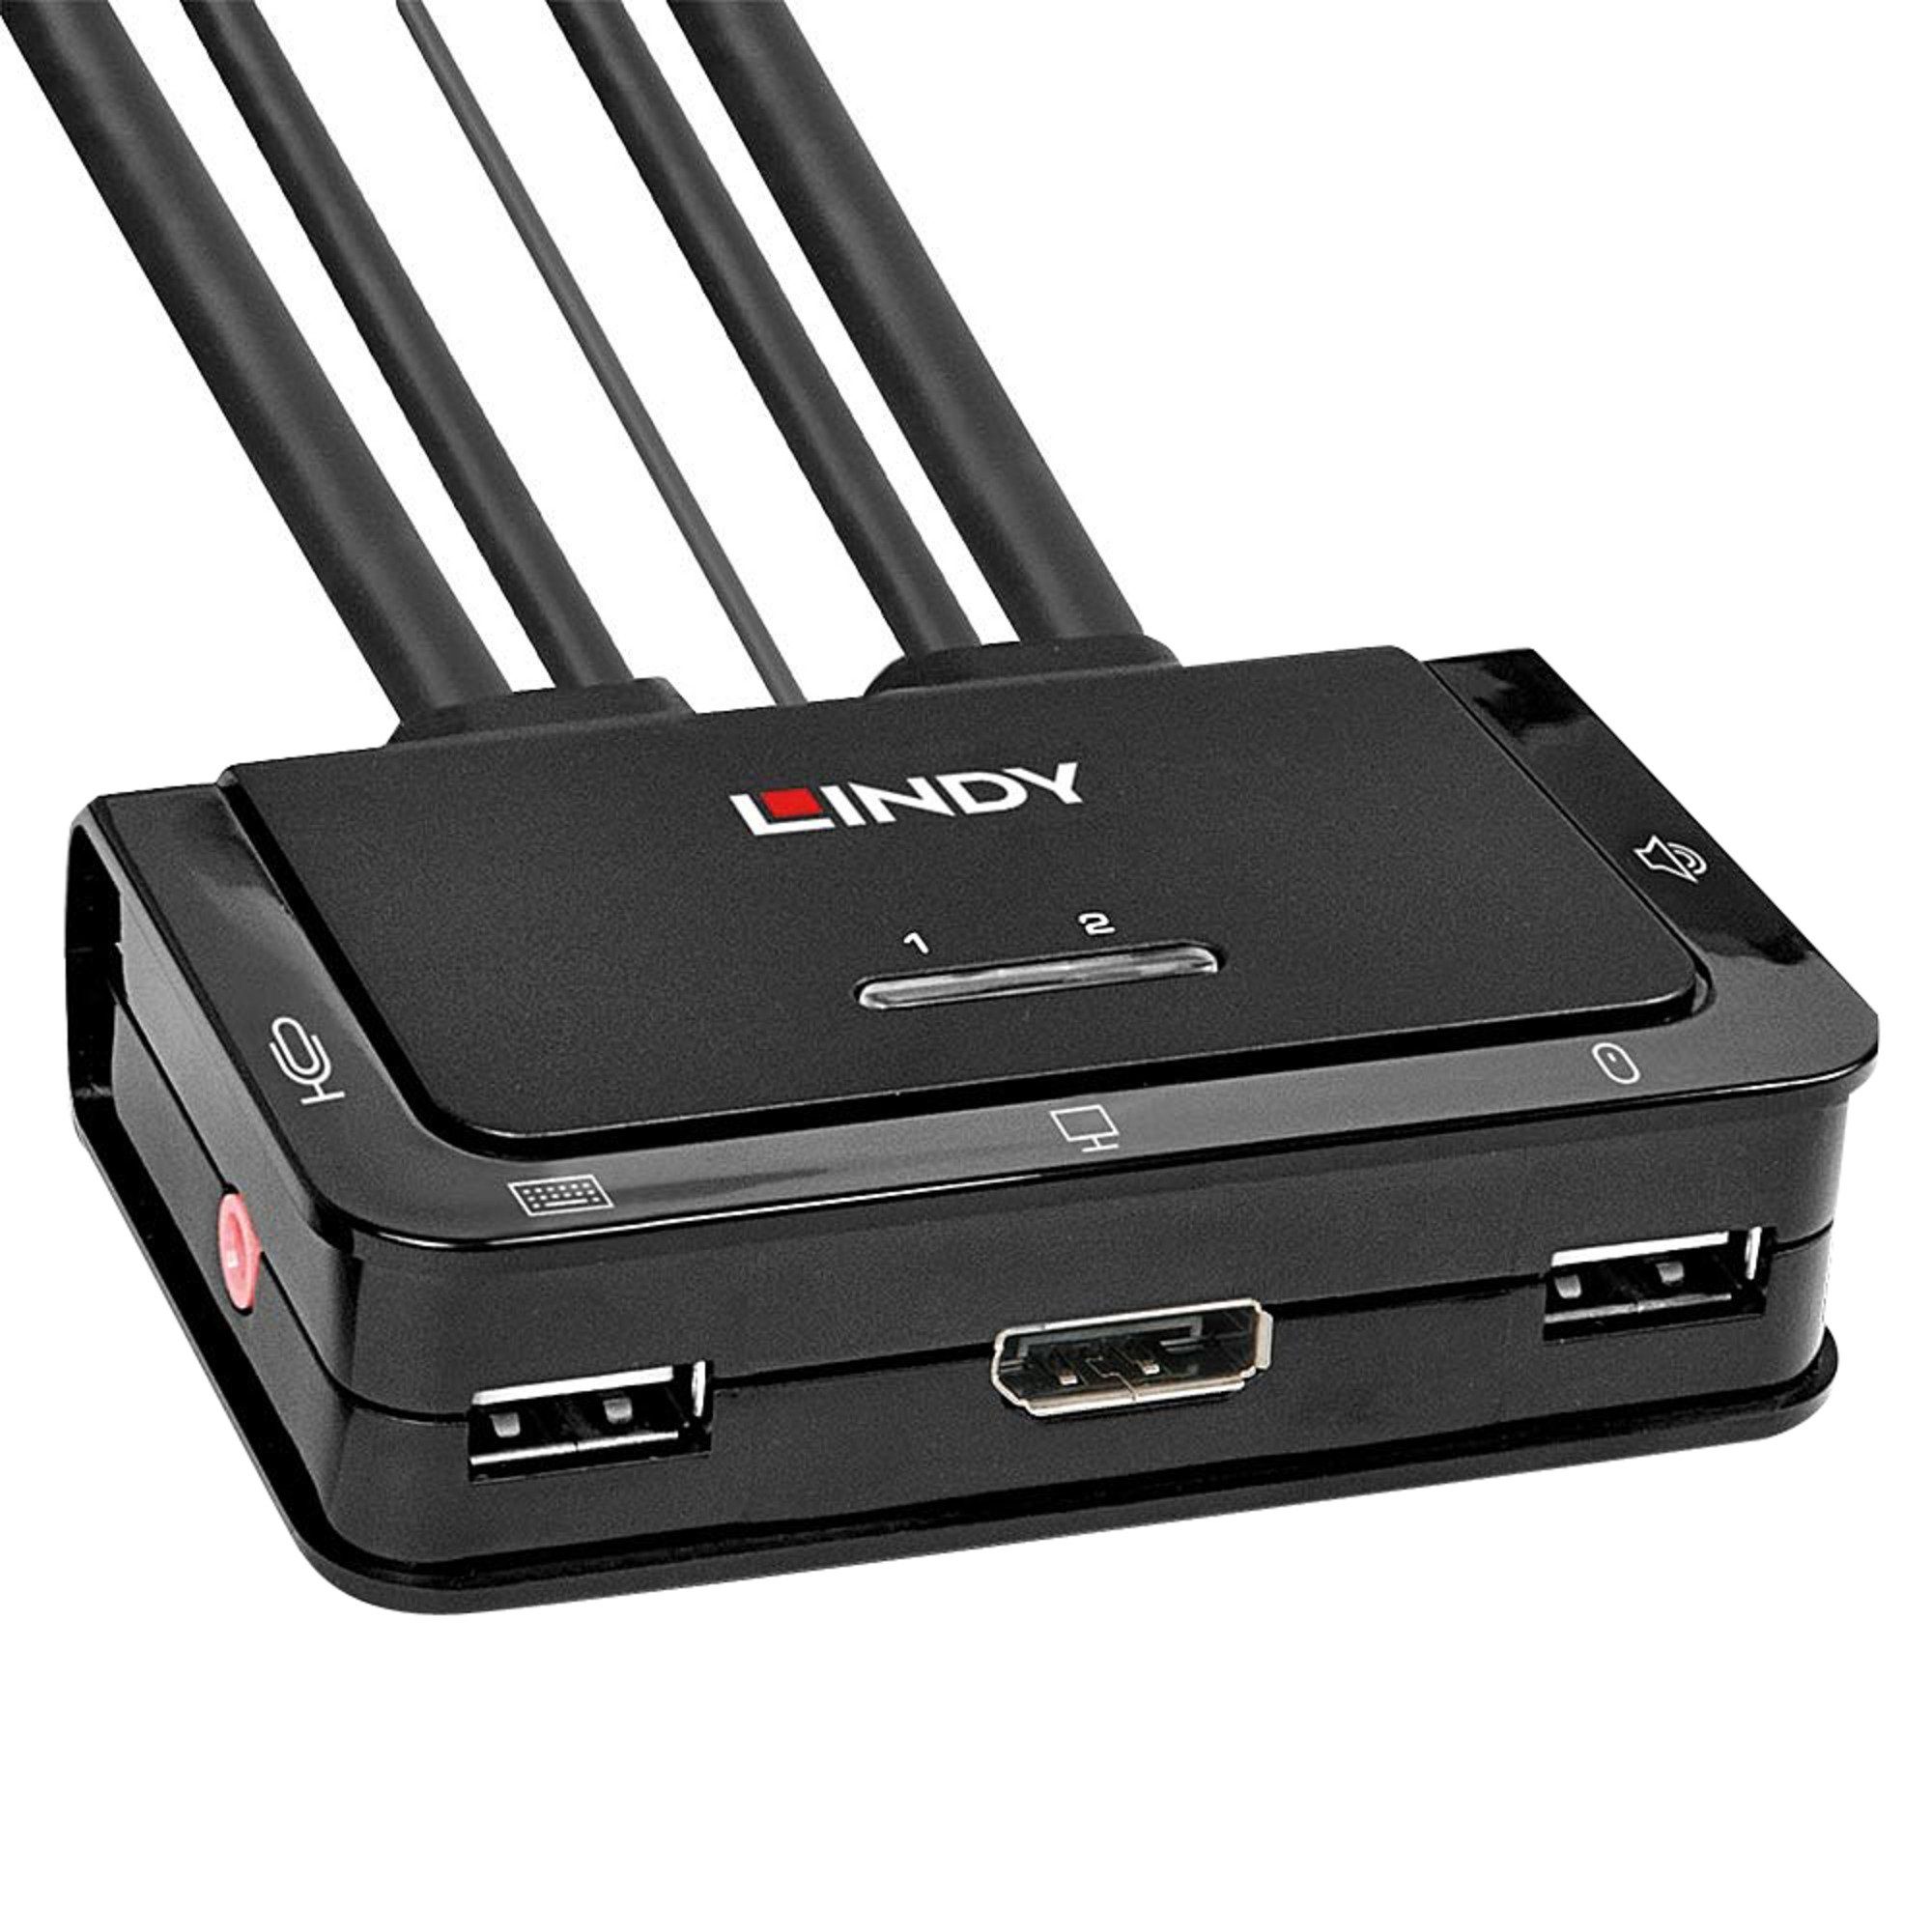 Lindy Lindy Audio Netzwerk-Switch Port 1.2, 2 USB & 2.0 DisplayPort